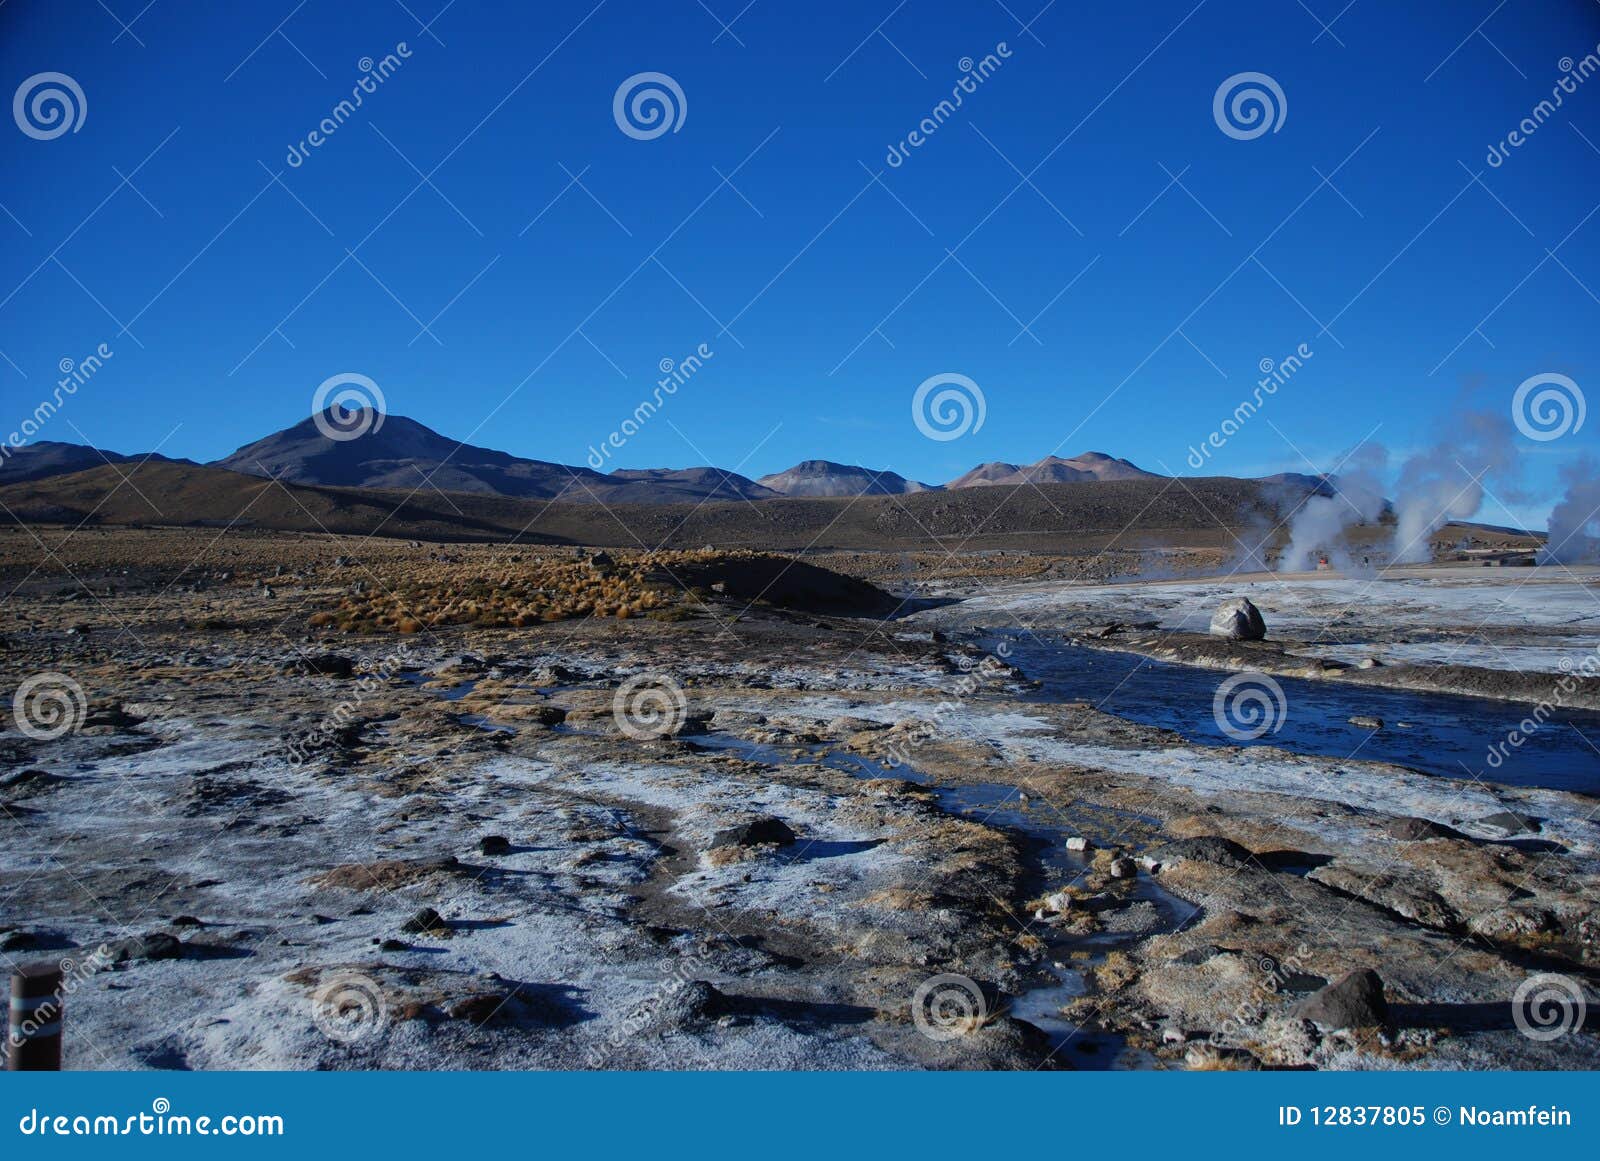 chilean geysers